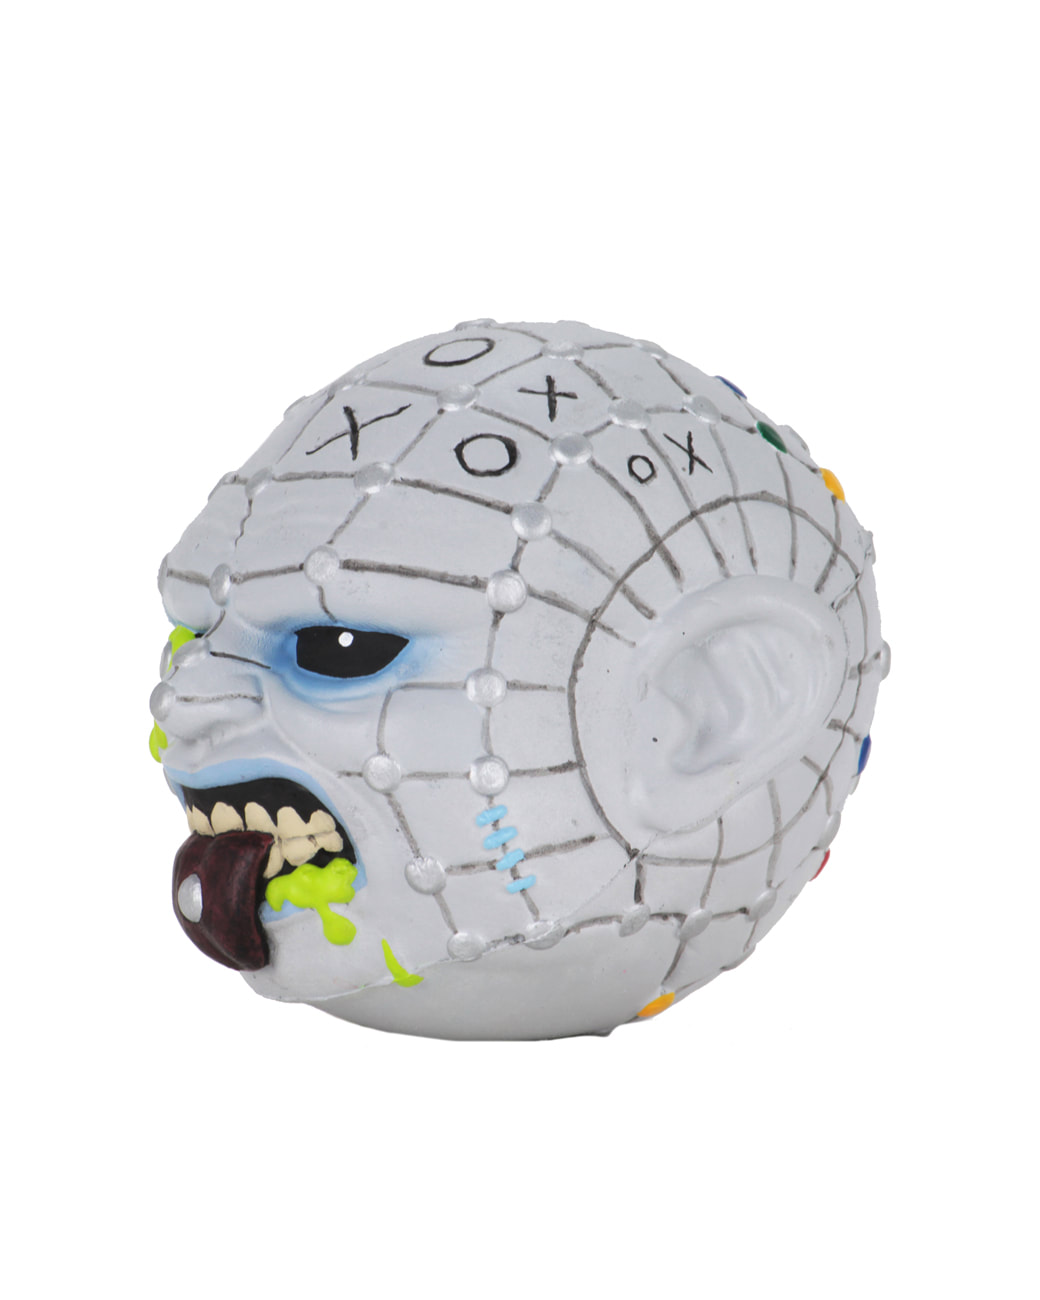 Hellraiser Pinhead Madballs 4" Foam Horrorball by Kidrobot NECA New 